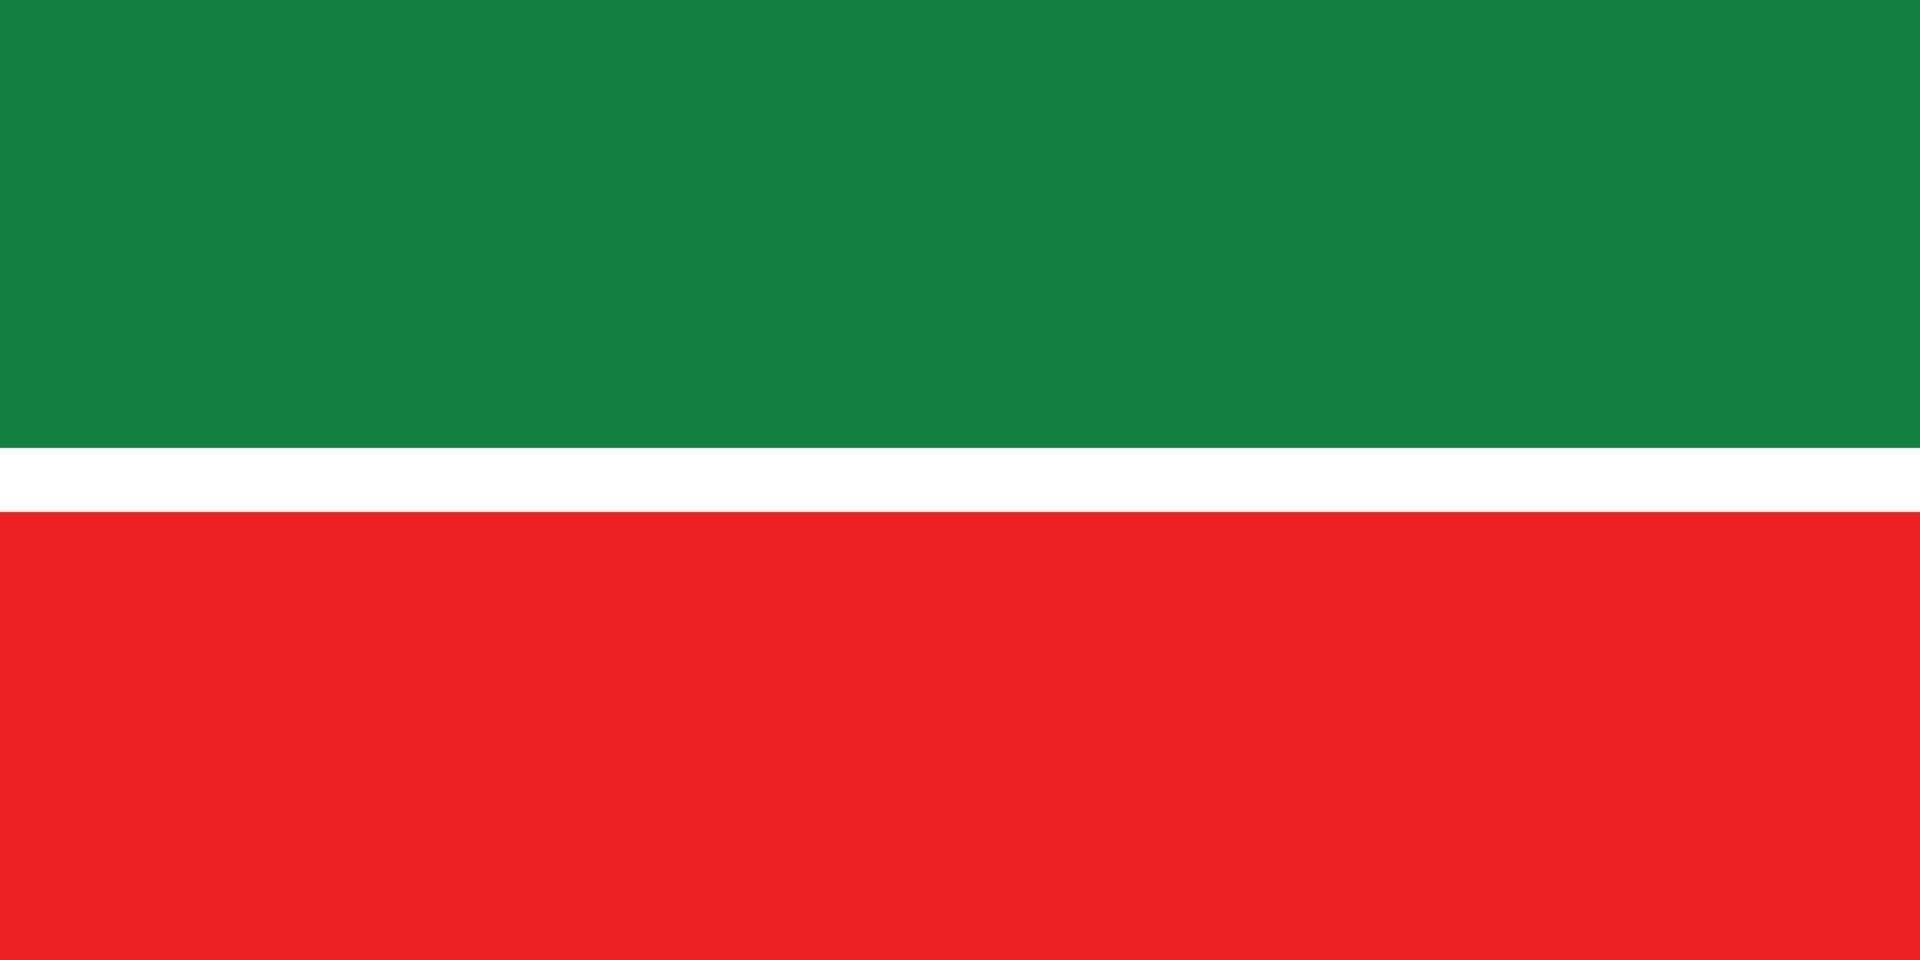 Tatarstan officially flag vector